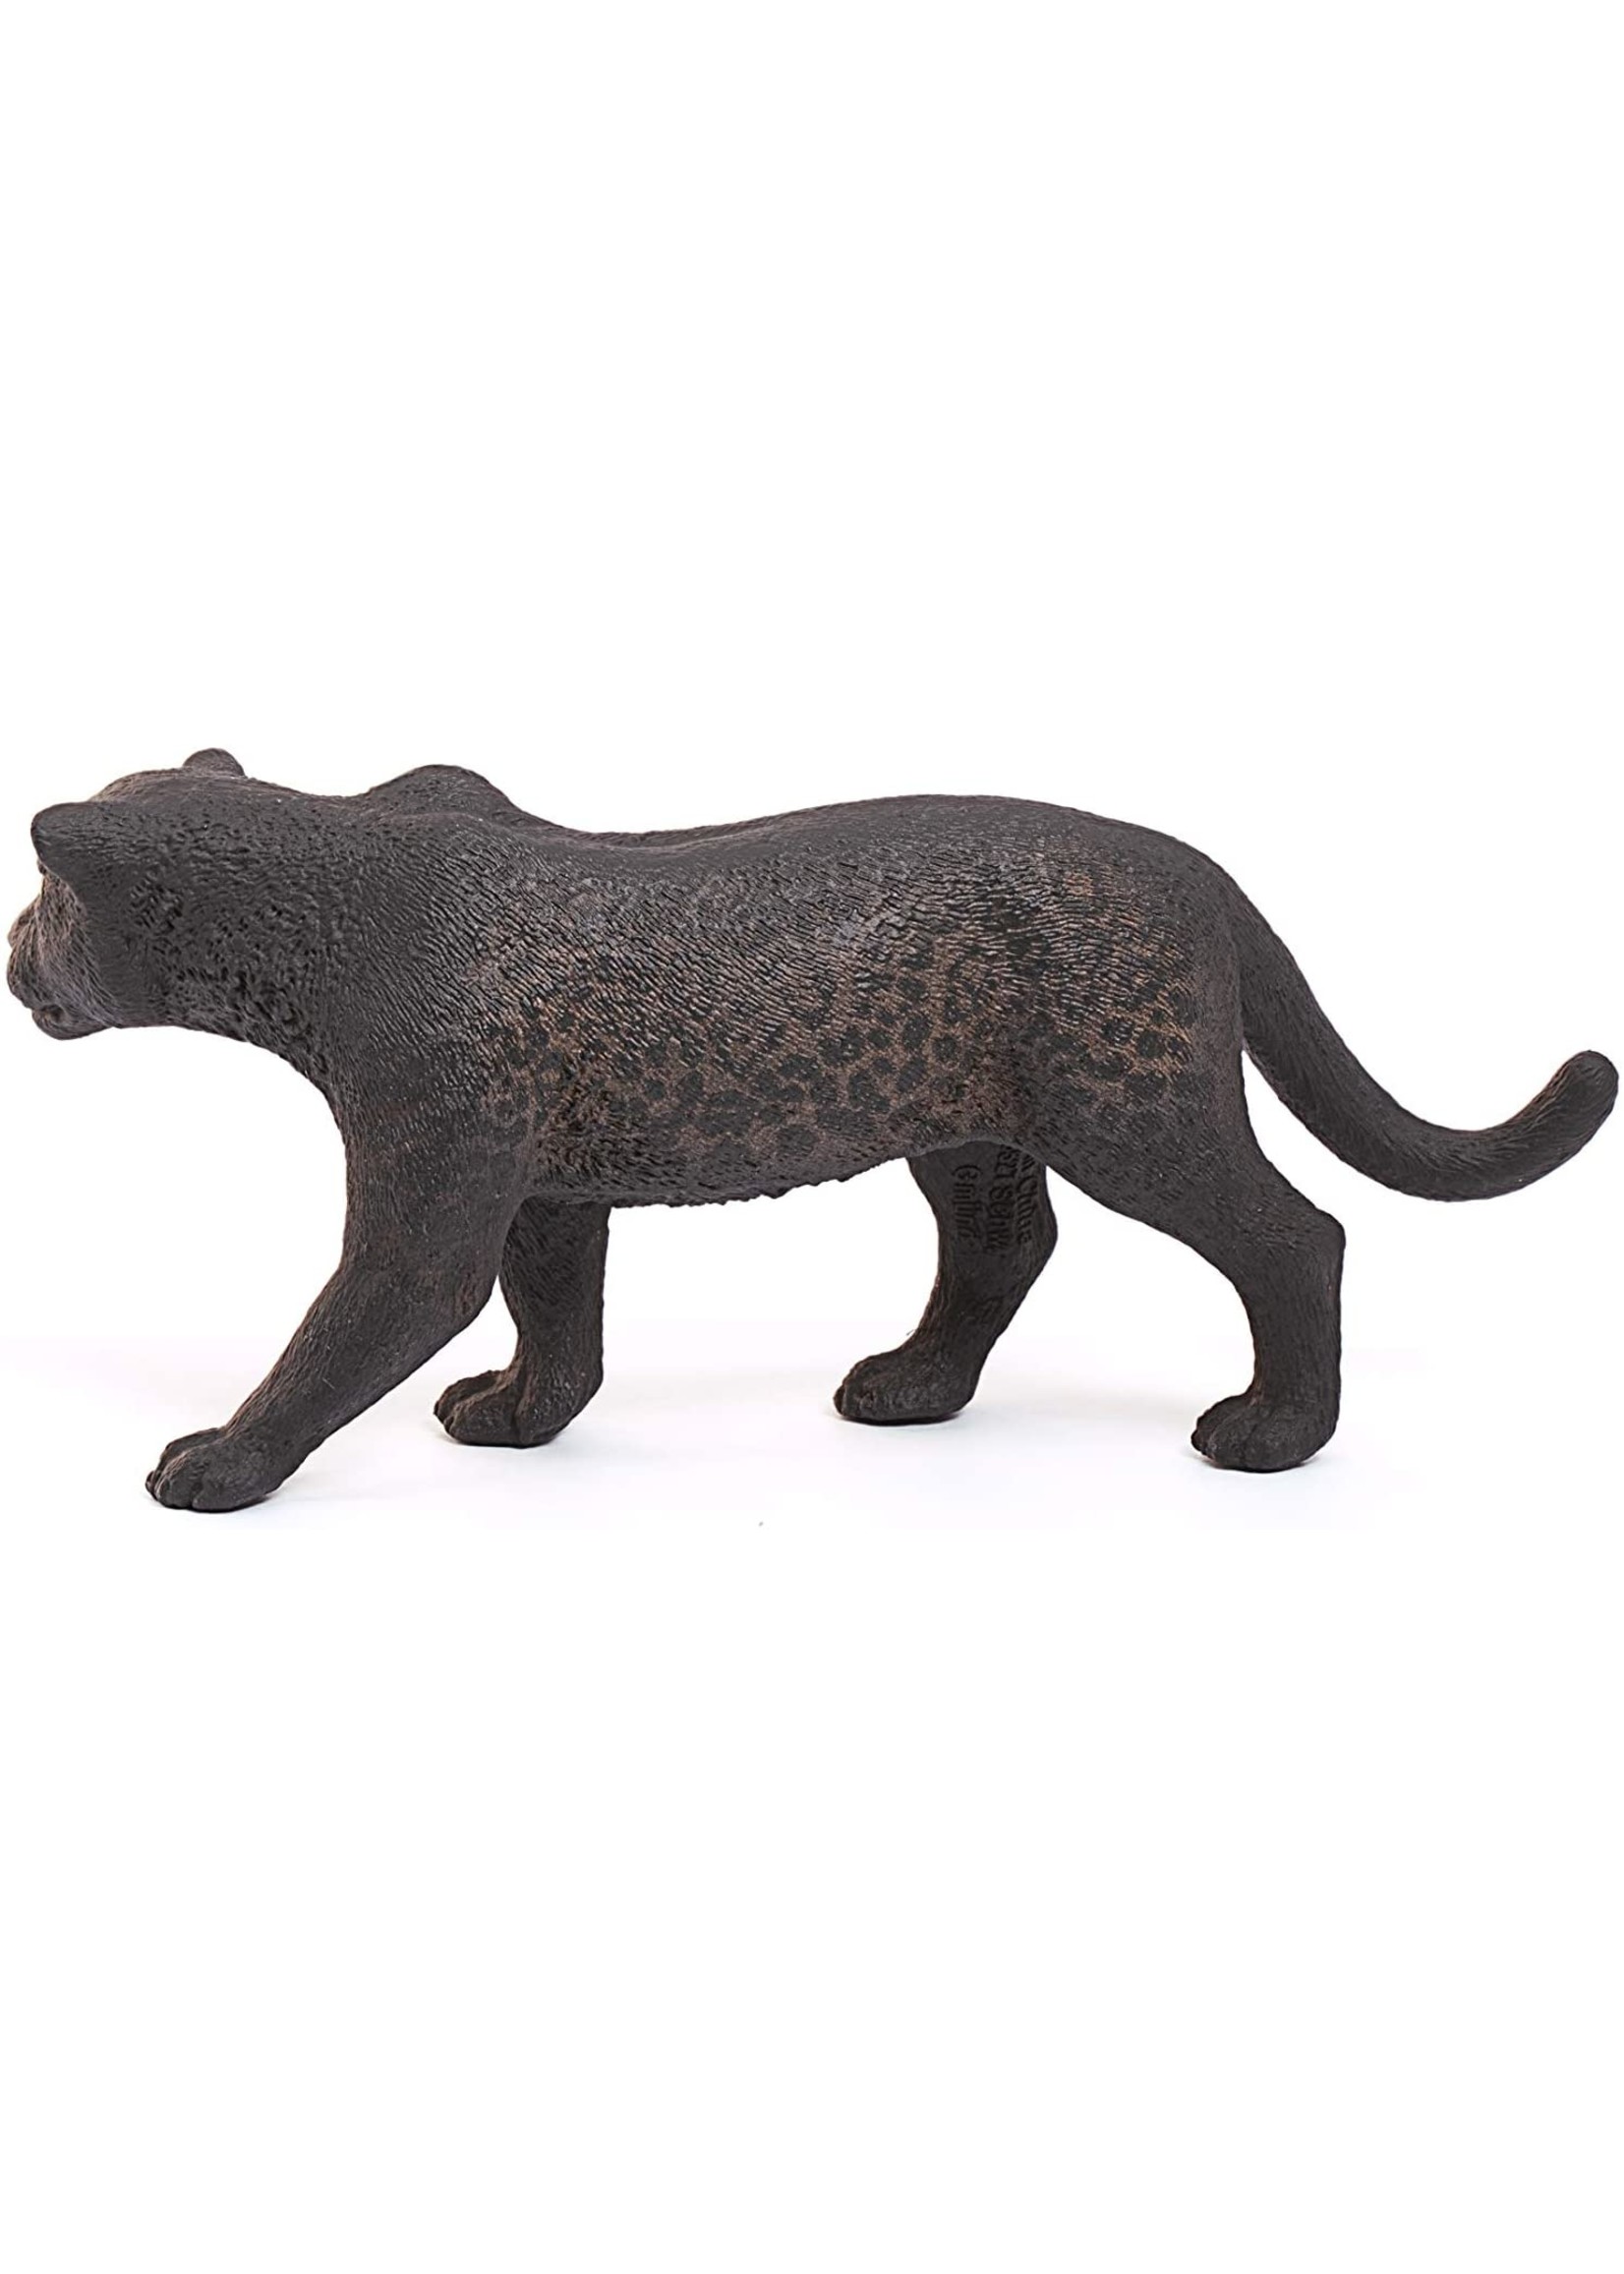 Schleich 14774 - Black Panther